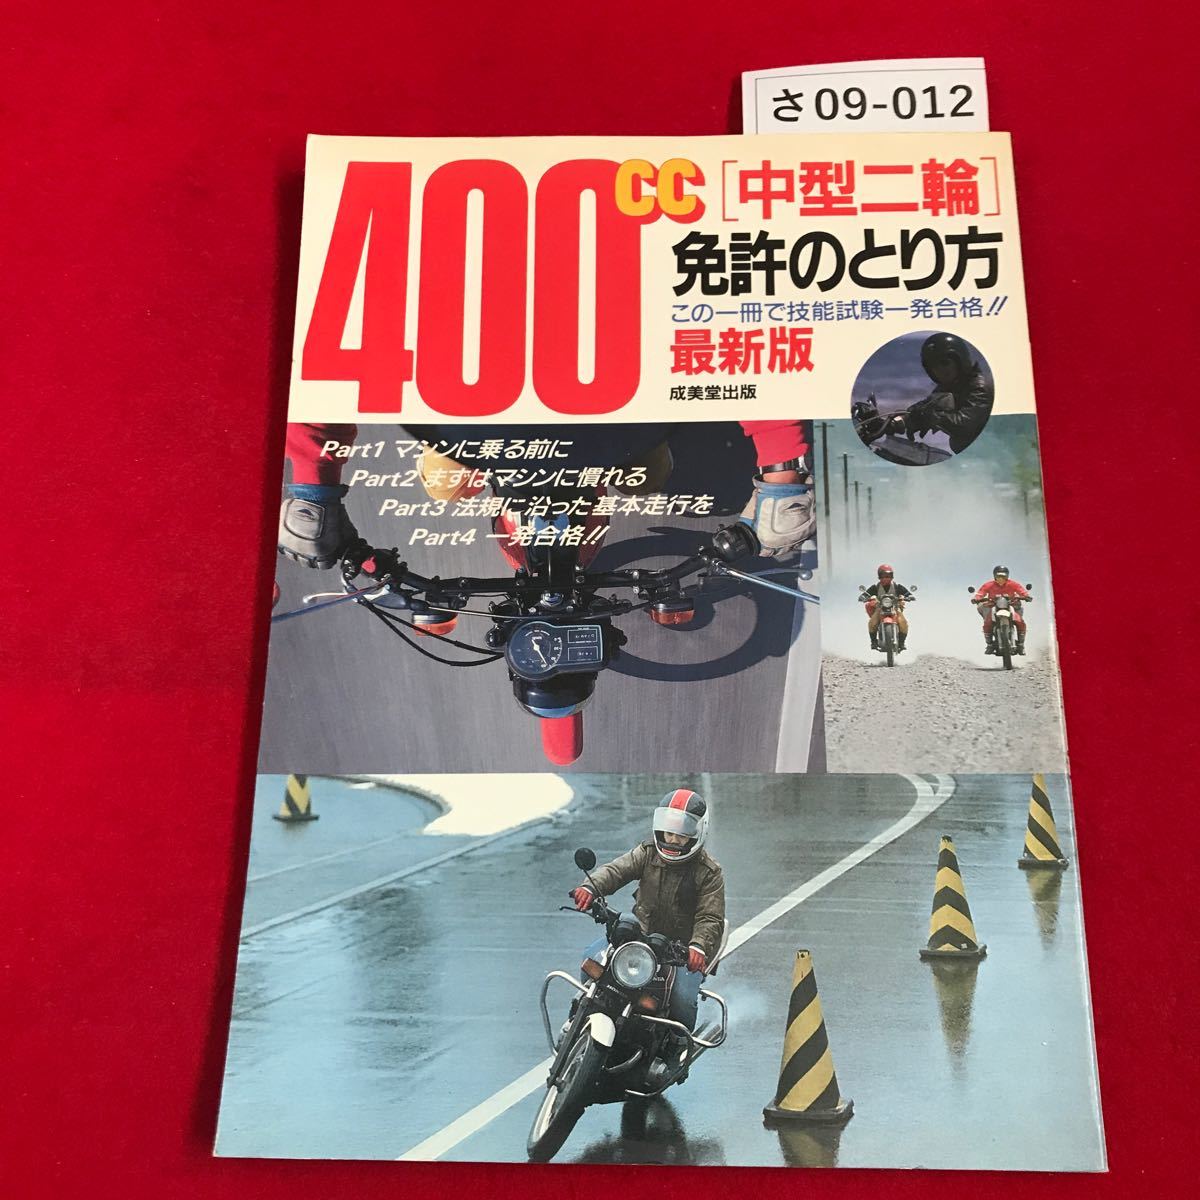 SA 09-012 Bike The WOR 400CC Как получить лицензию на мотоцикл среднего размера в издательстве Наримодо 1988 года.